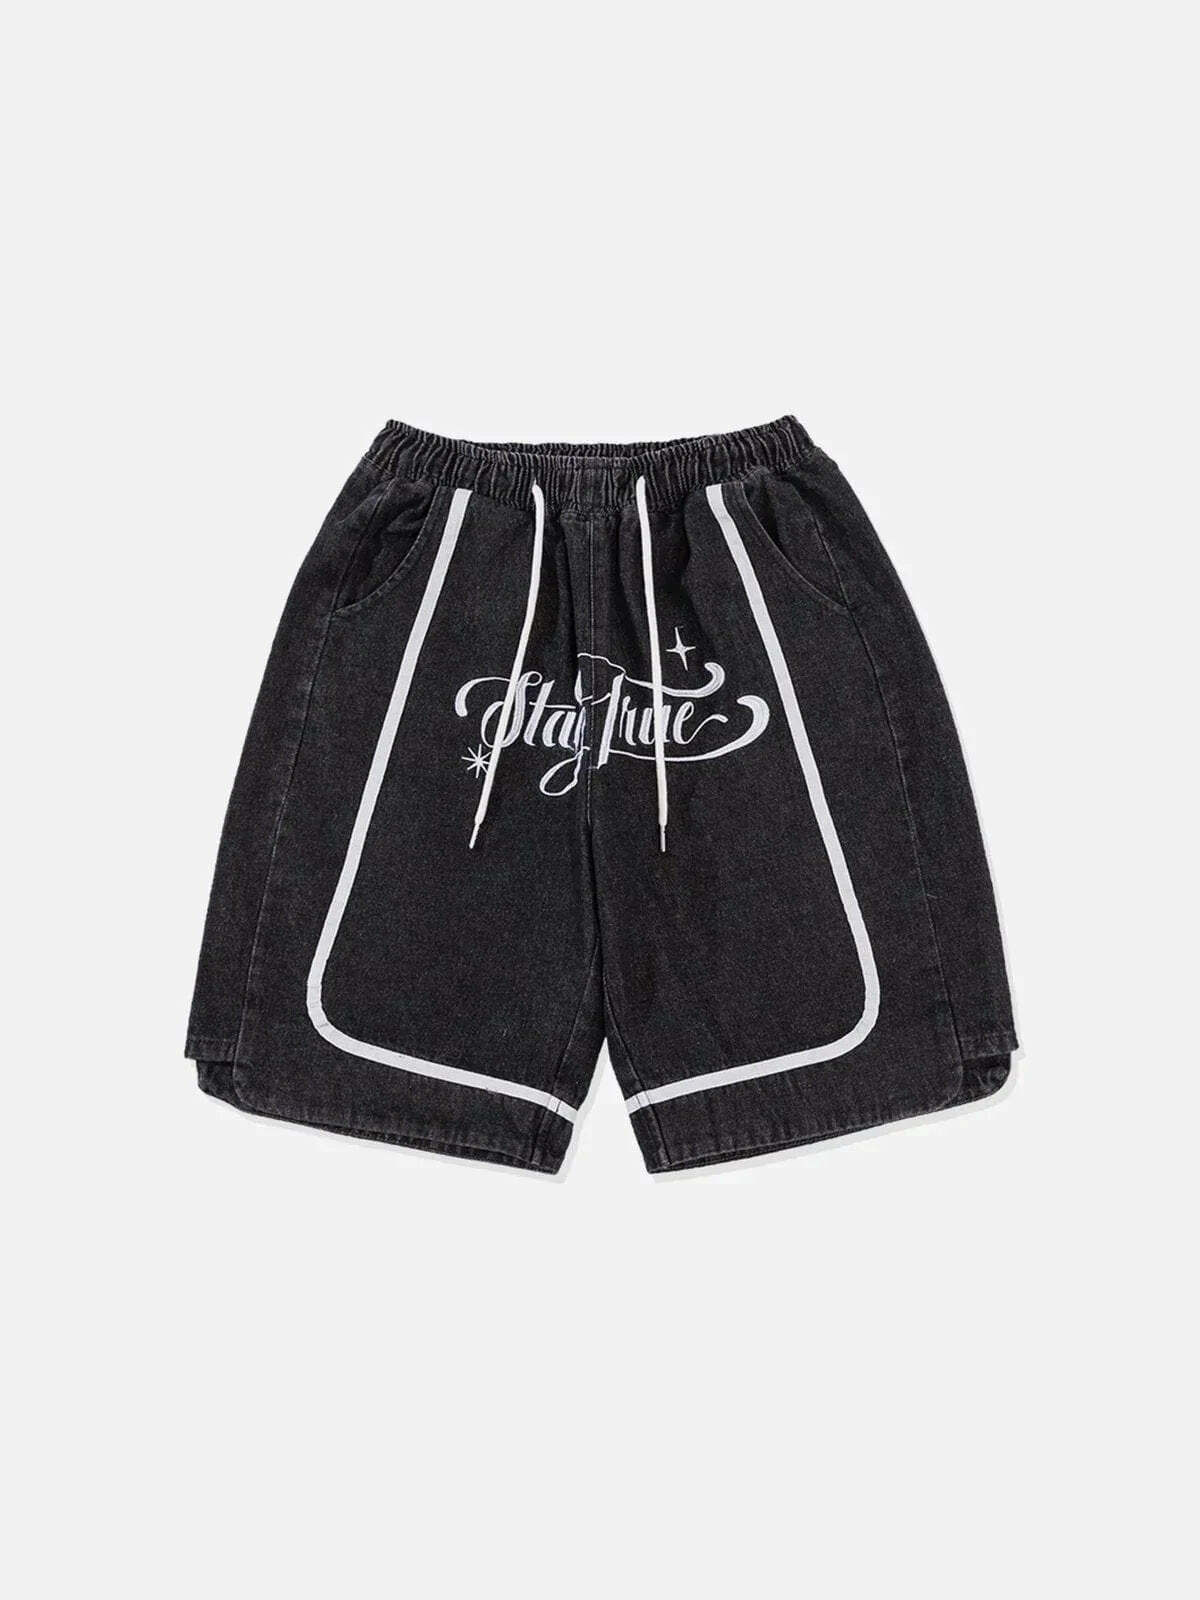 patchwork denim shorts edgy streetwear statement 6966